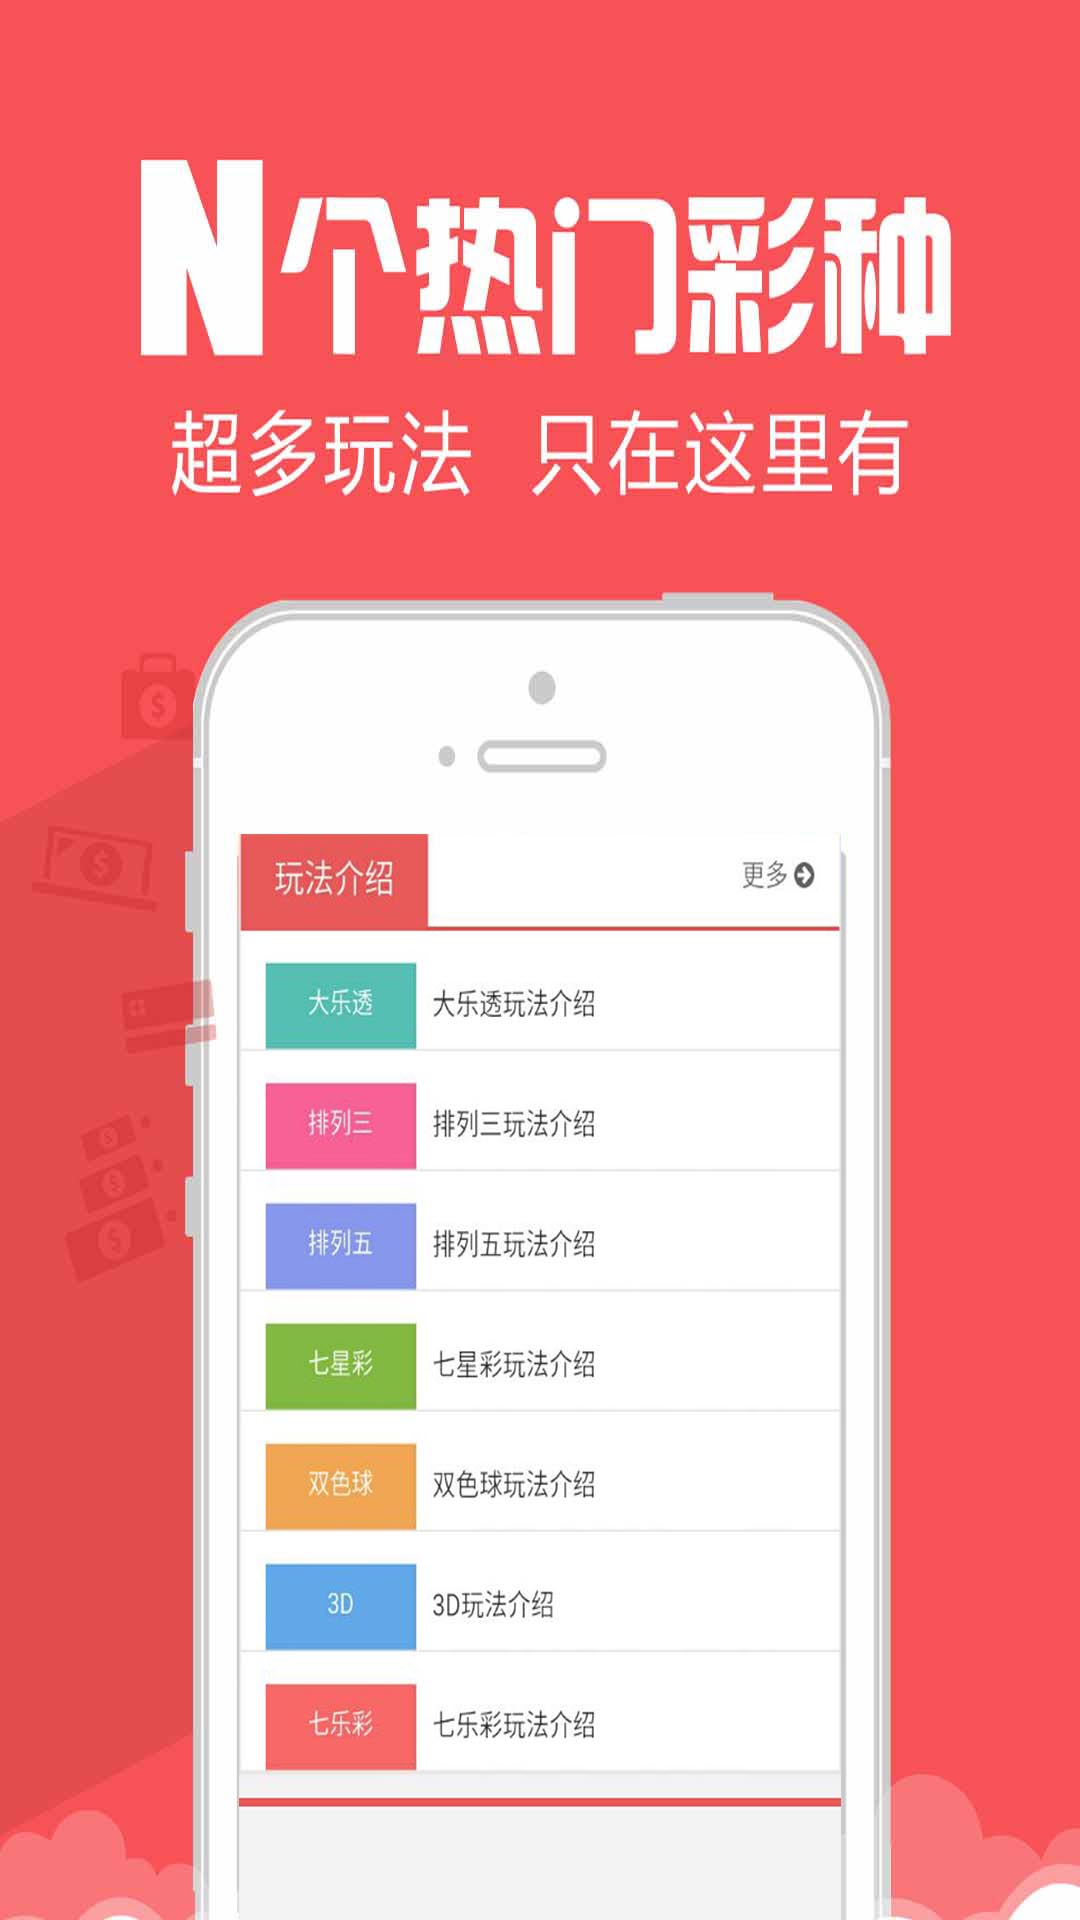 959彩票手机软件app截图